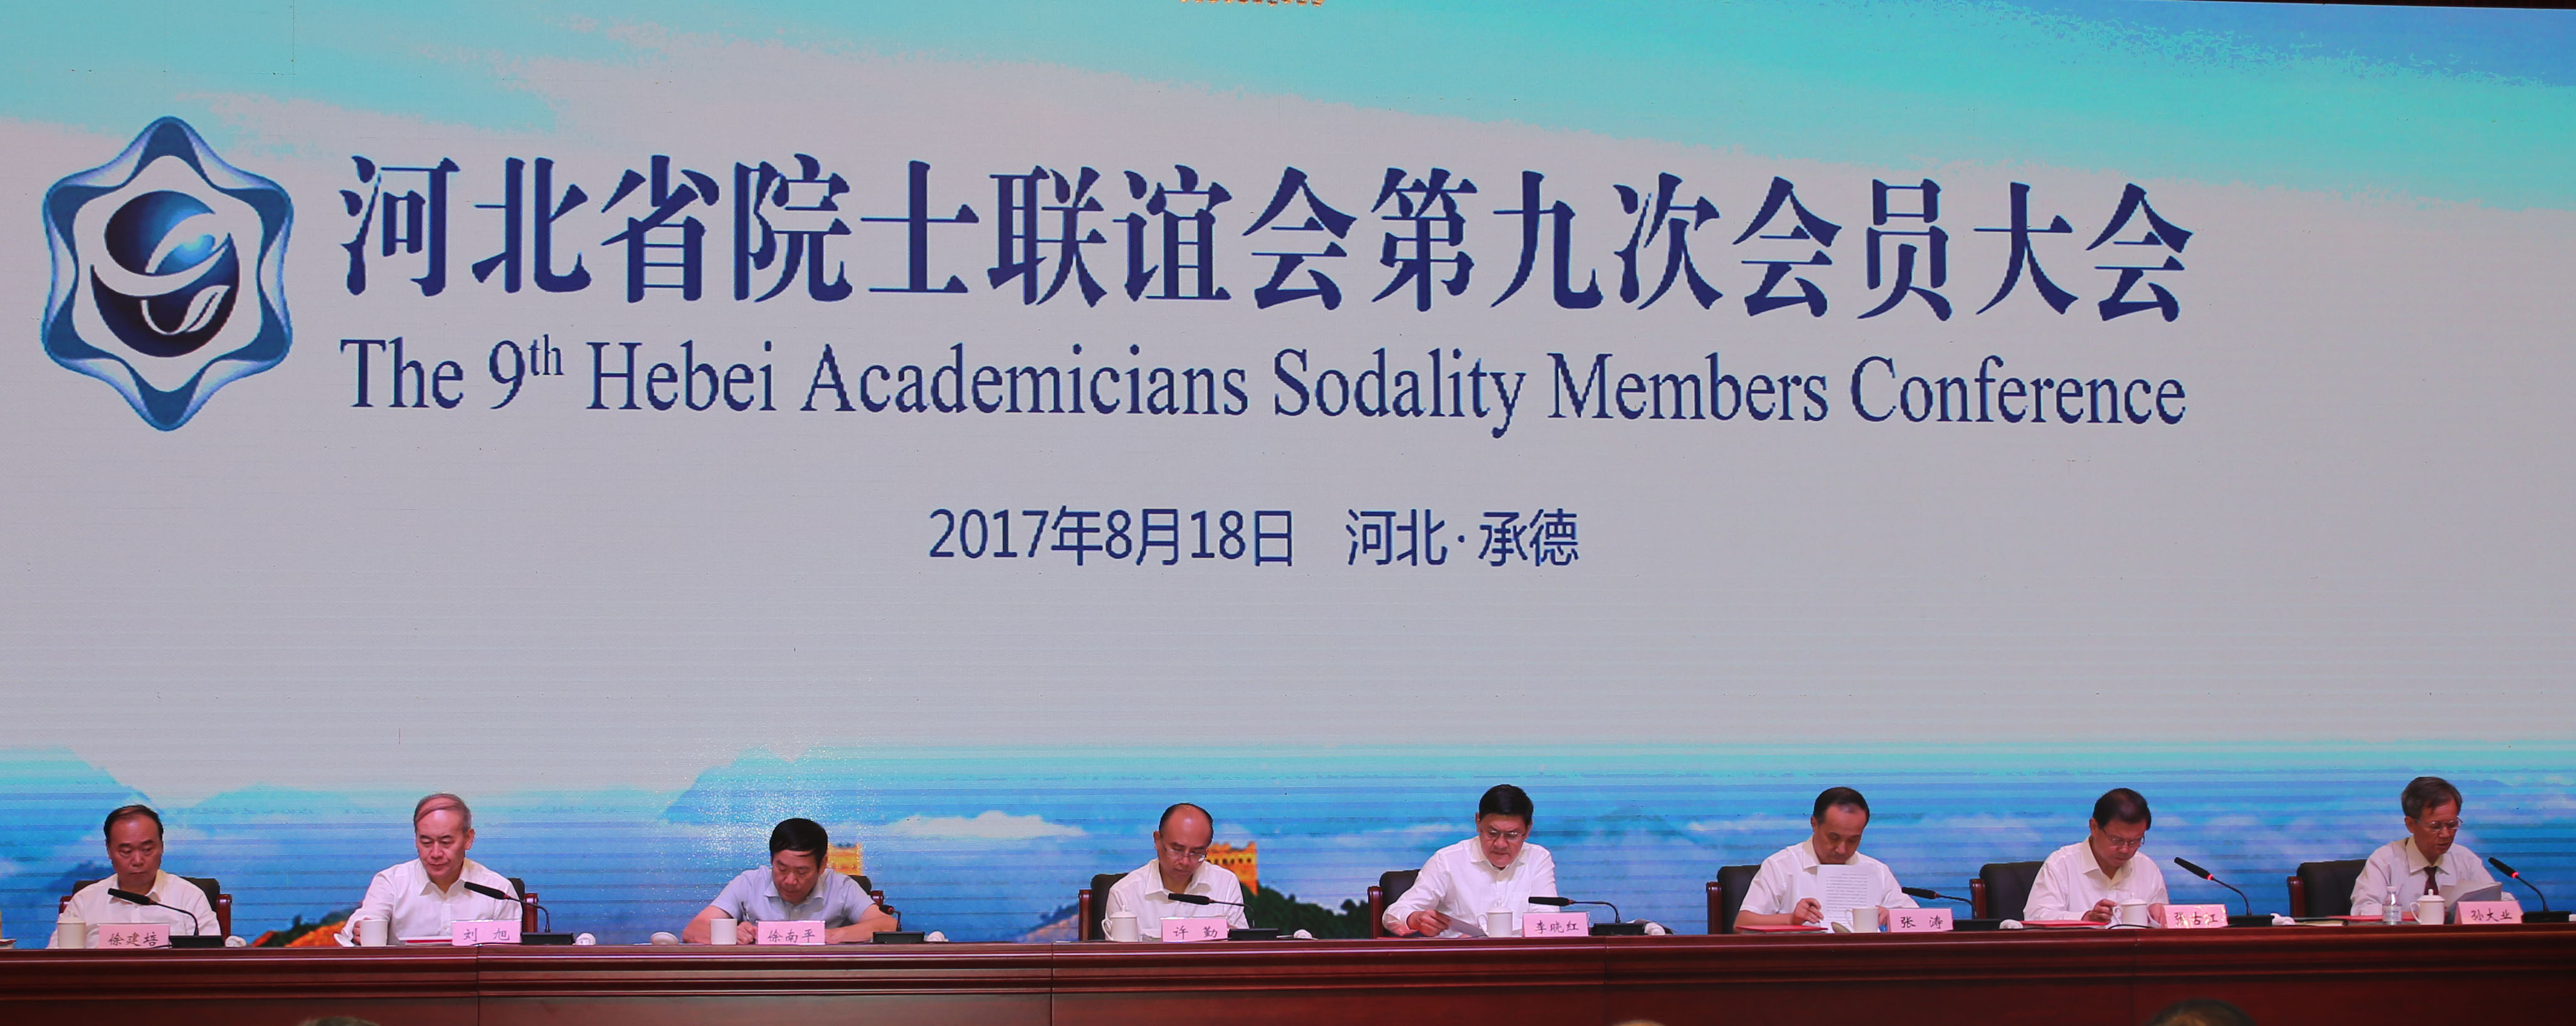 张涛出席河北省院士联谊会第九次会员大会并致辞